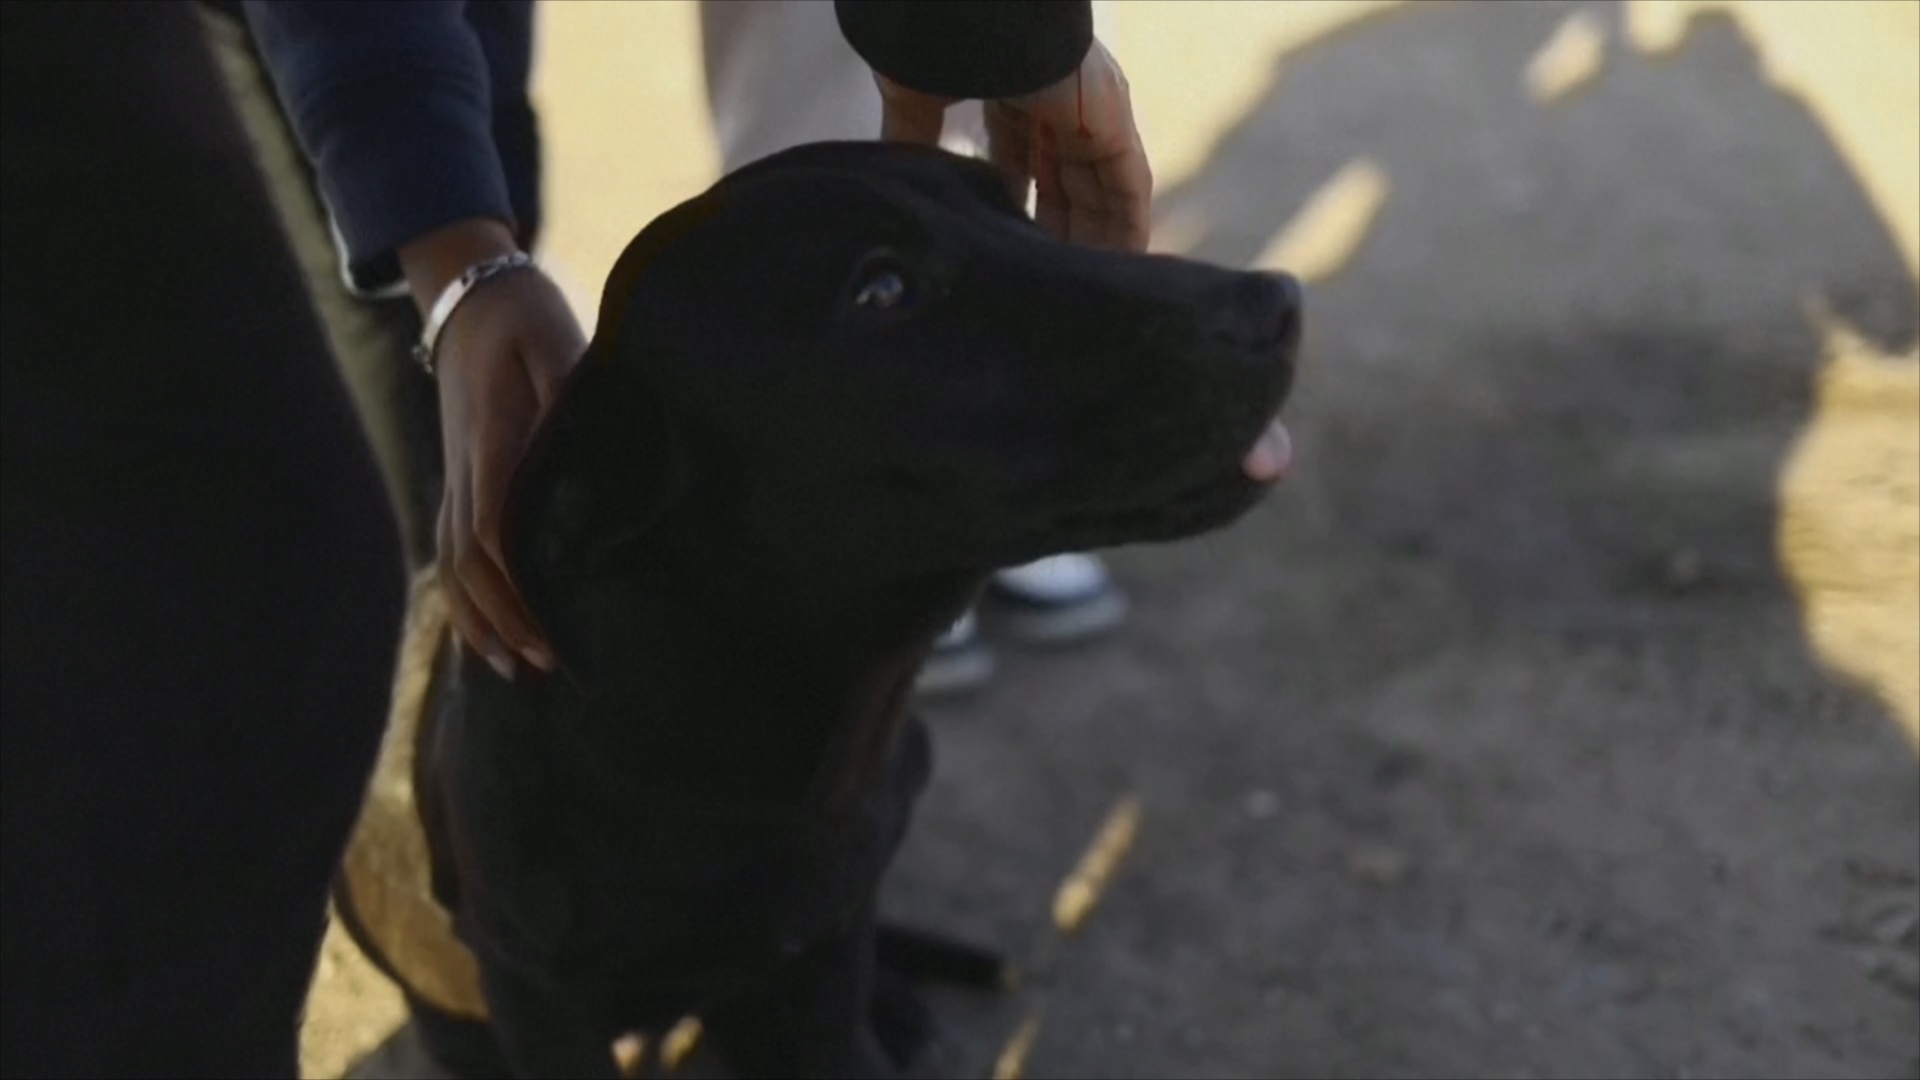 Мигранту пришлось отдать любимую собаку семье в Мексике, чтобы попасть в США